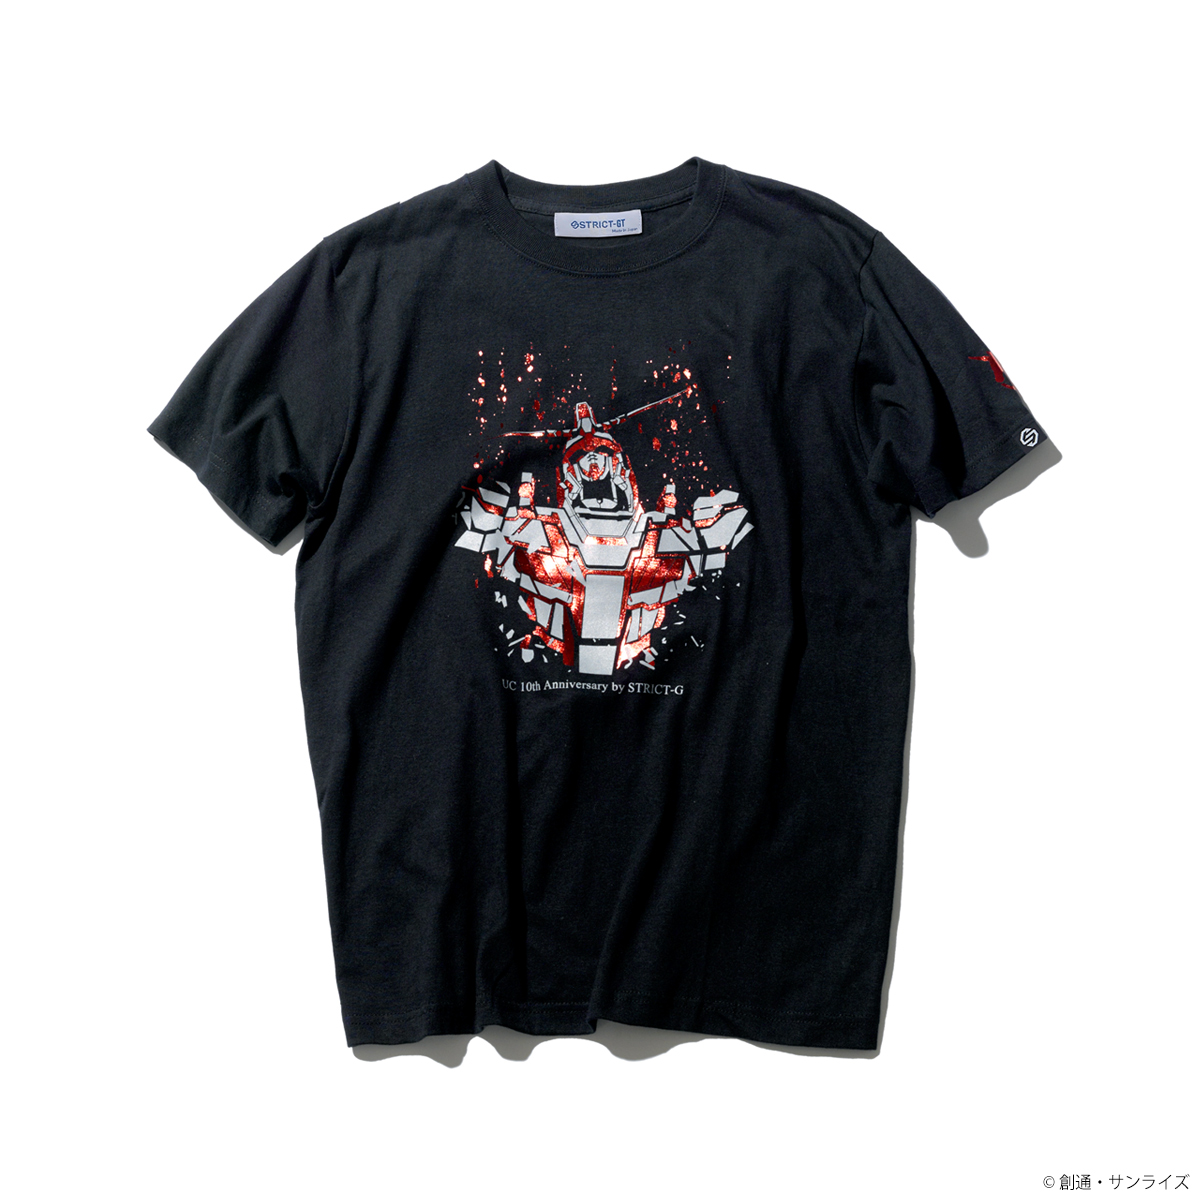 STRICT-G『機動戦士ガンダムUC』 OVA10周年記念 Tシャツ ユニコーンガンダム柄